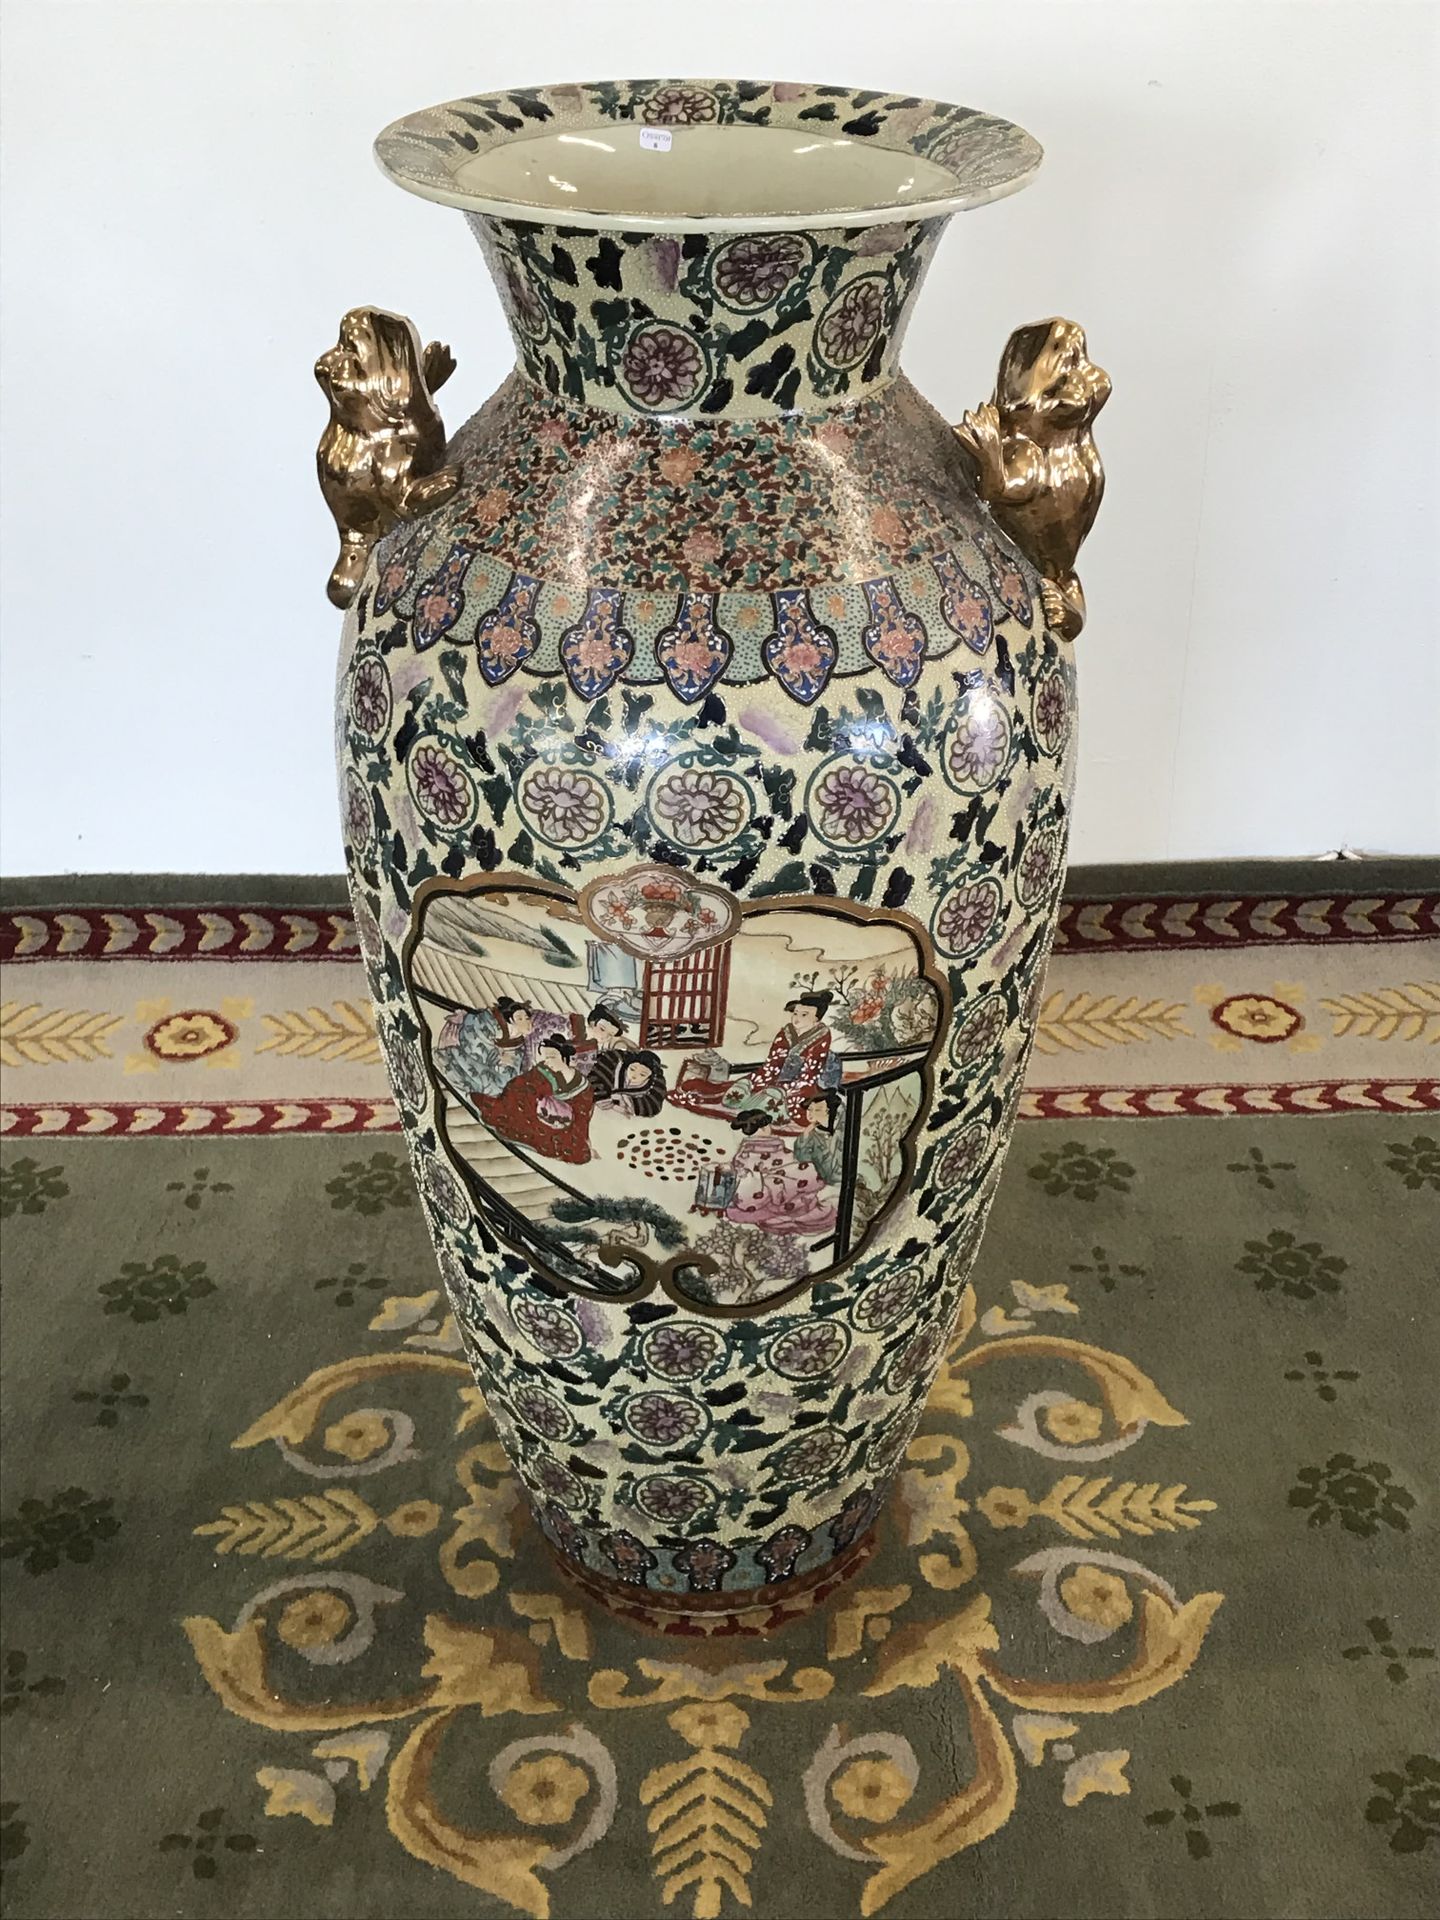 Null 中国

大型珐琅彩瓷瓶，装饰有花朵和人物。

TBE

H.92厘米